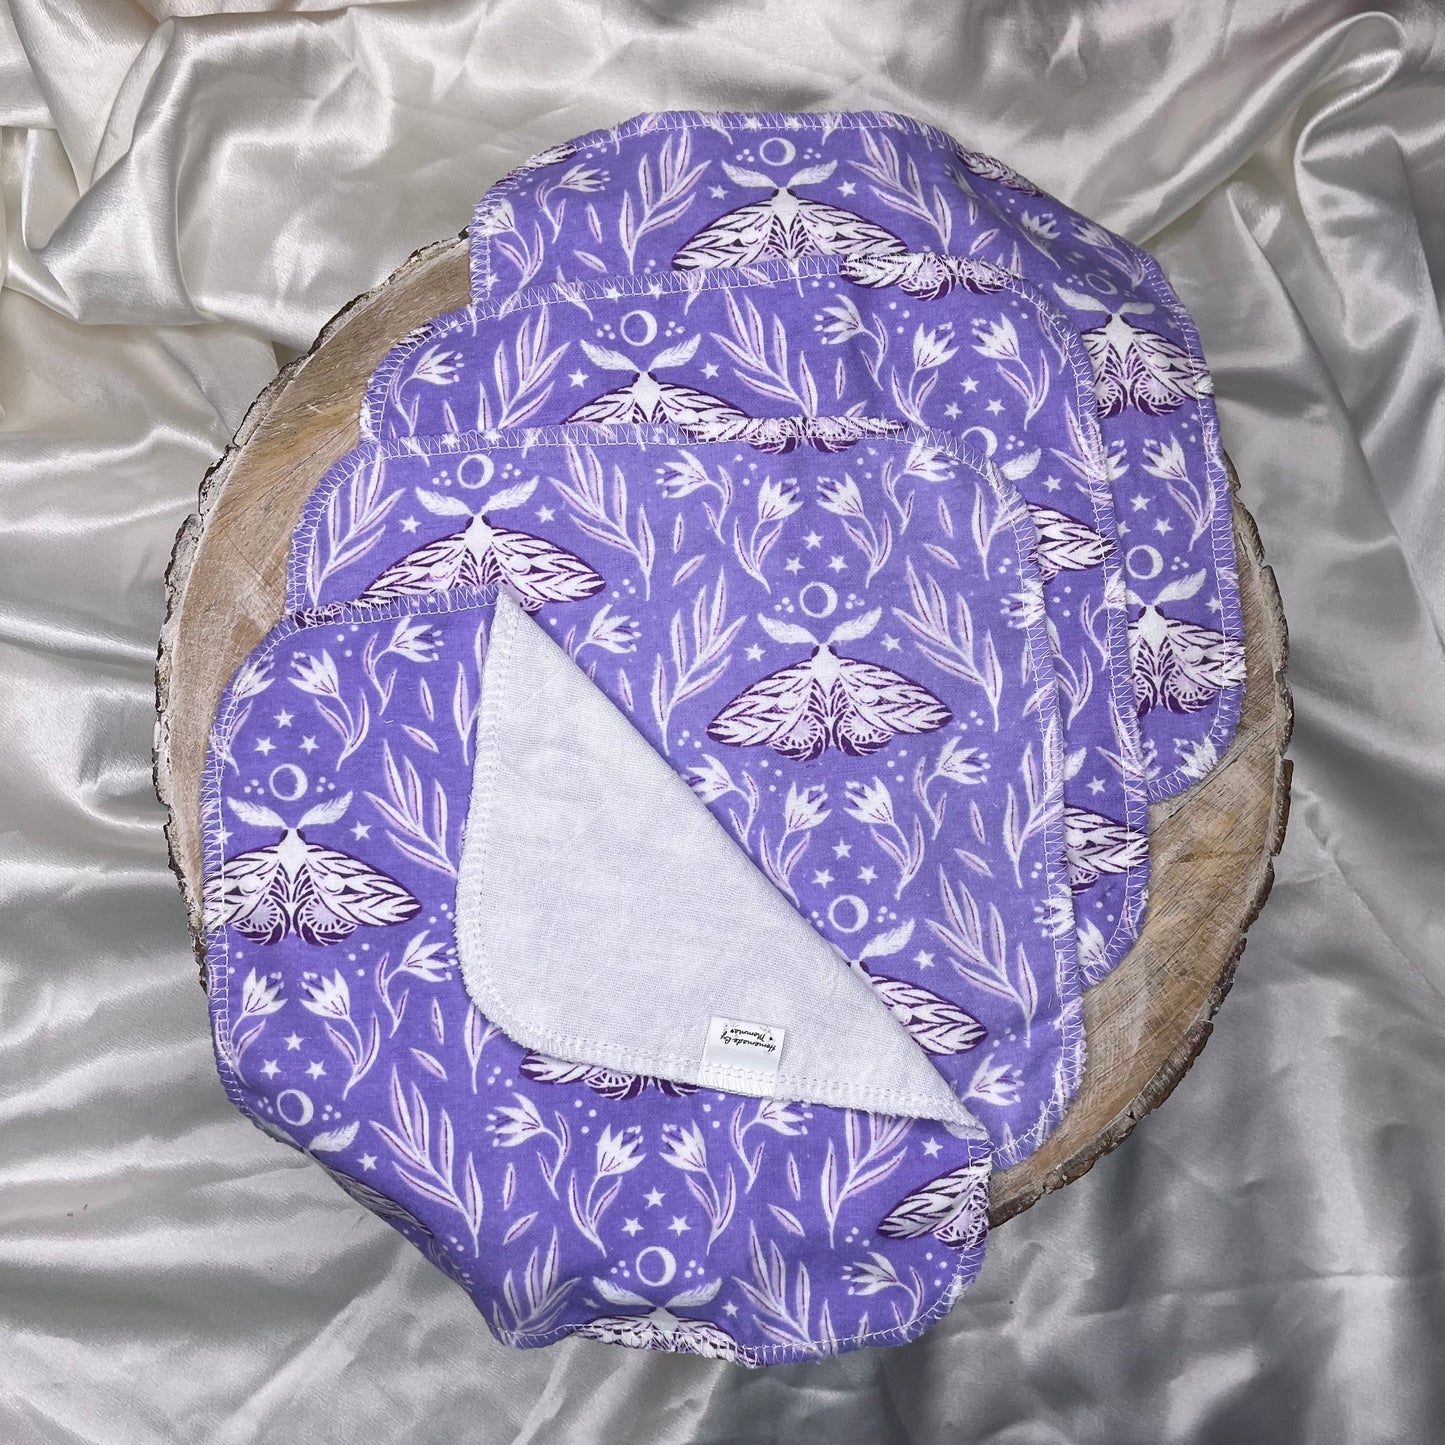 Paperless Towel - Purple Lunar